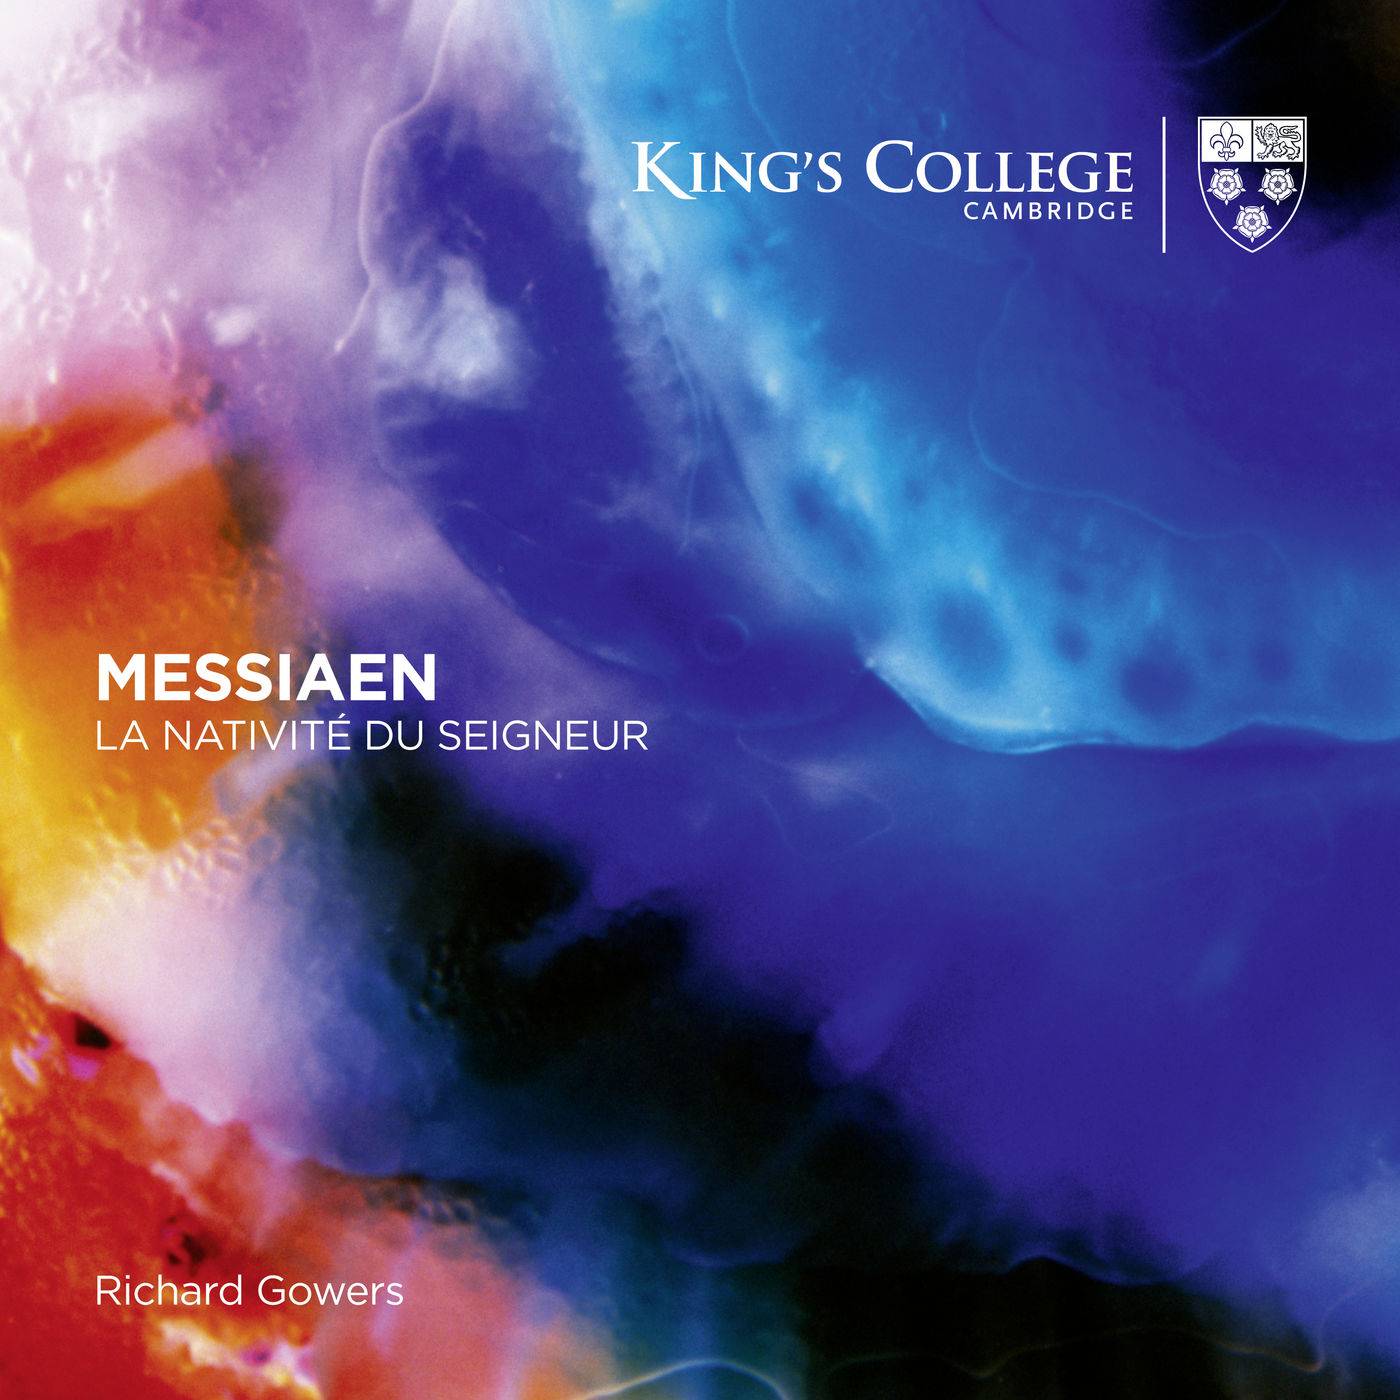 Richard Gowers - Messiaen: La Nativite du Seigneur (2018) [FLAC 24bit/96kHz]